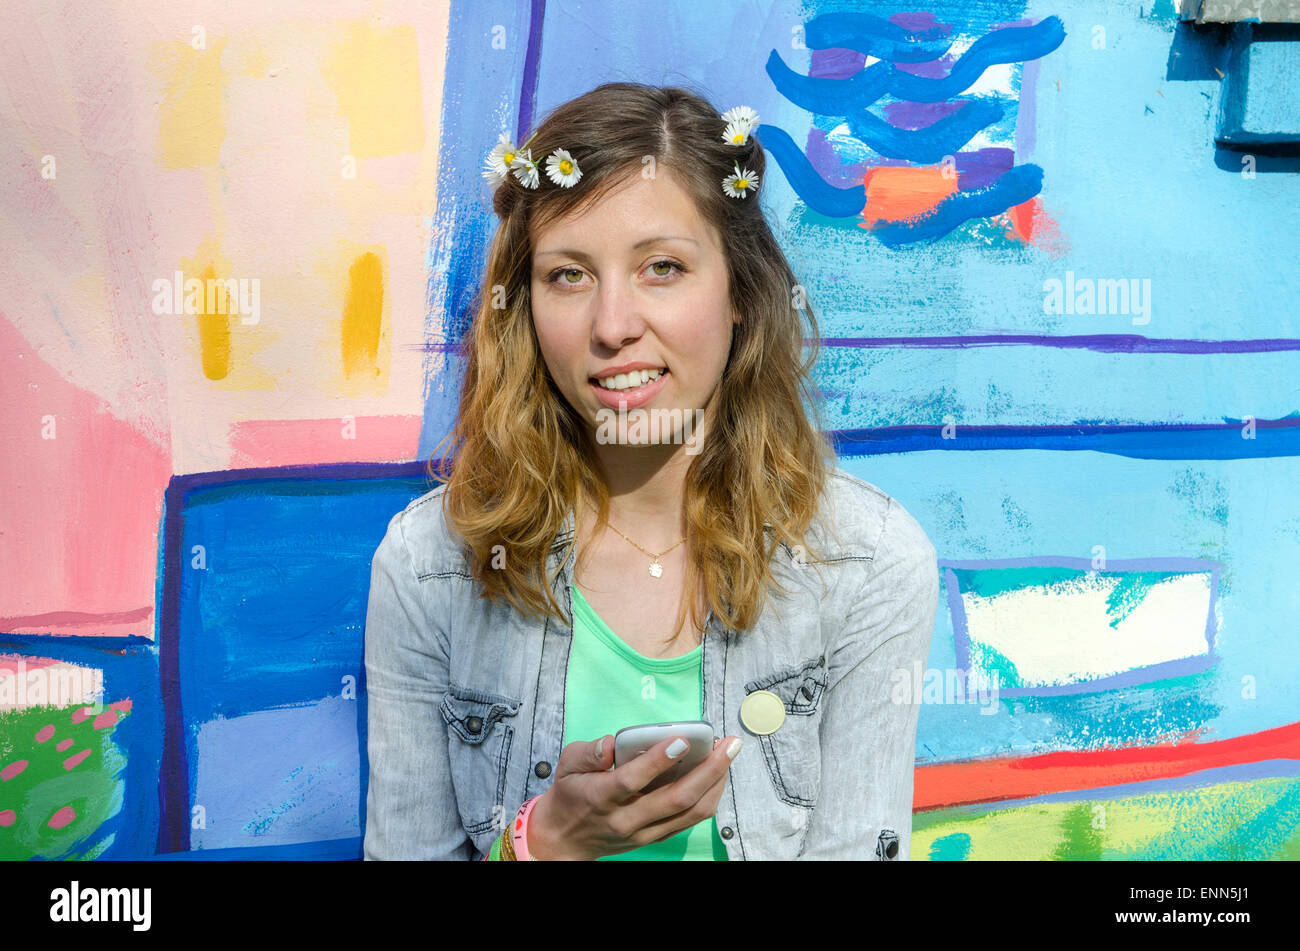 Les jeunes posant contre une toile colorée holding smart phone Banque D'Images